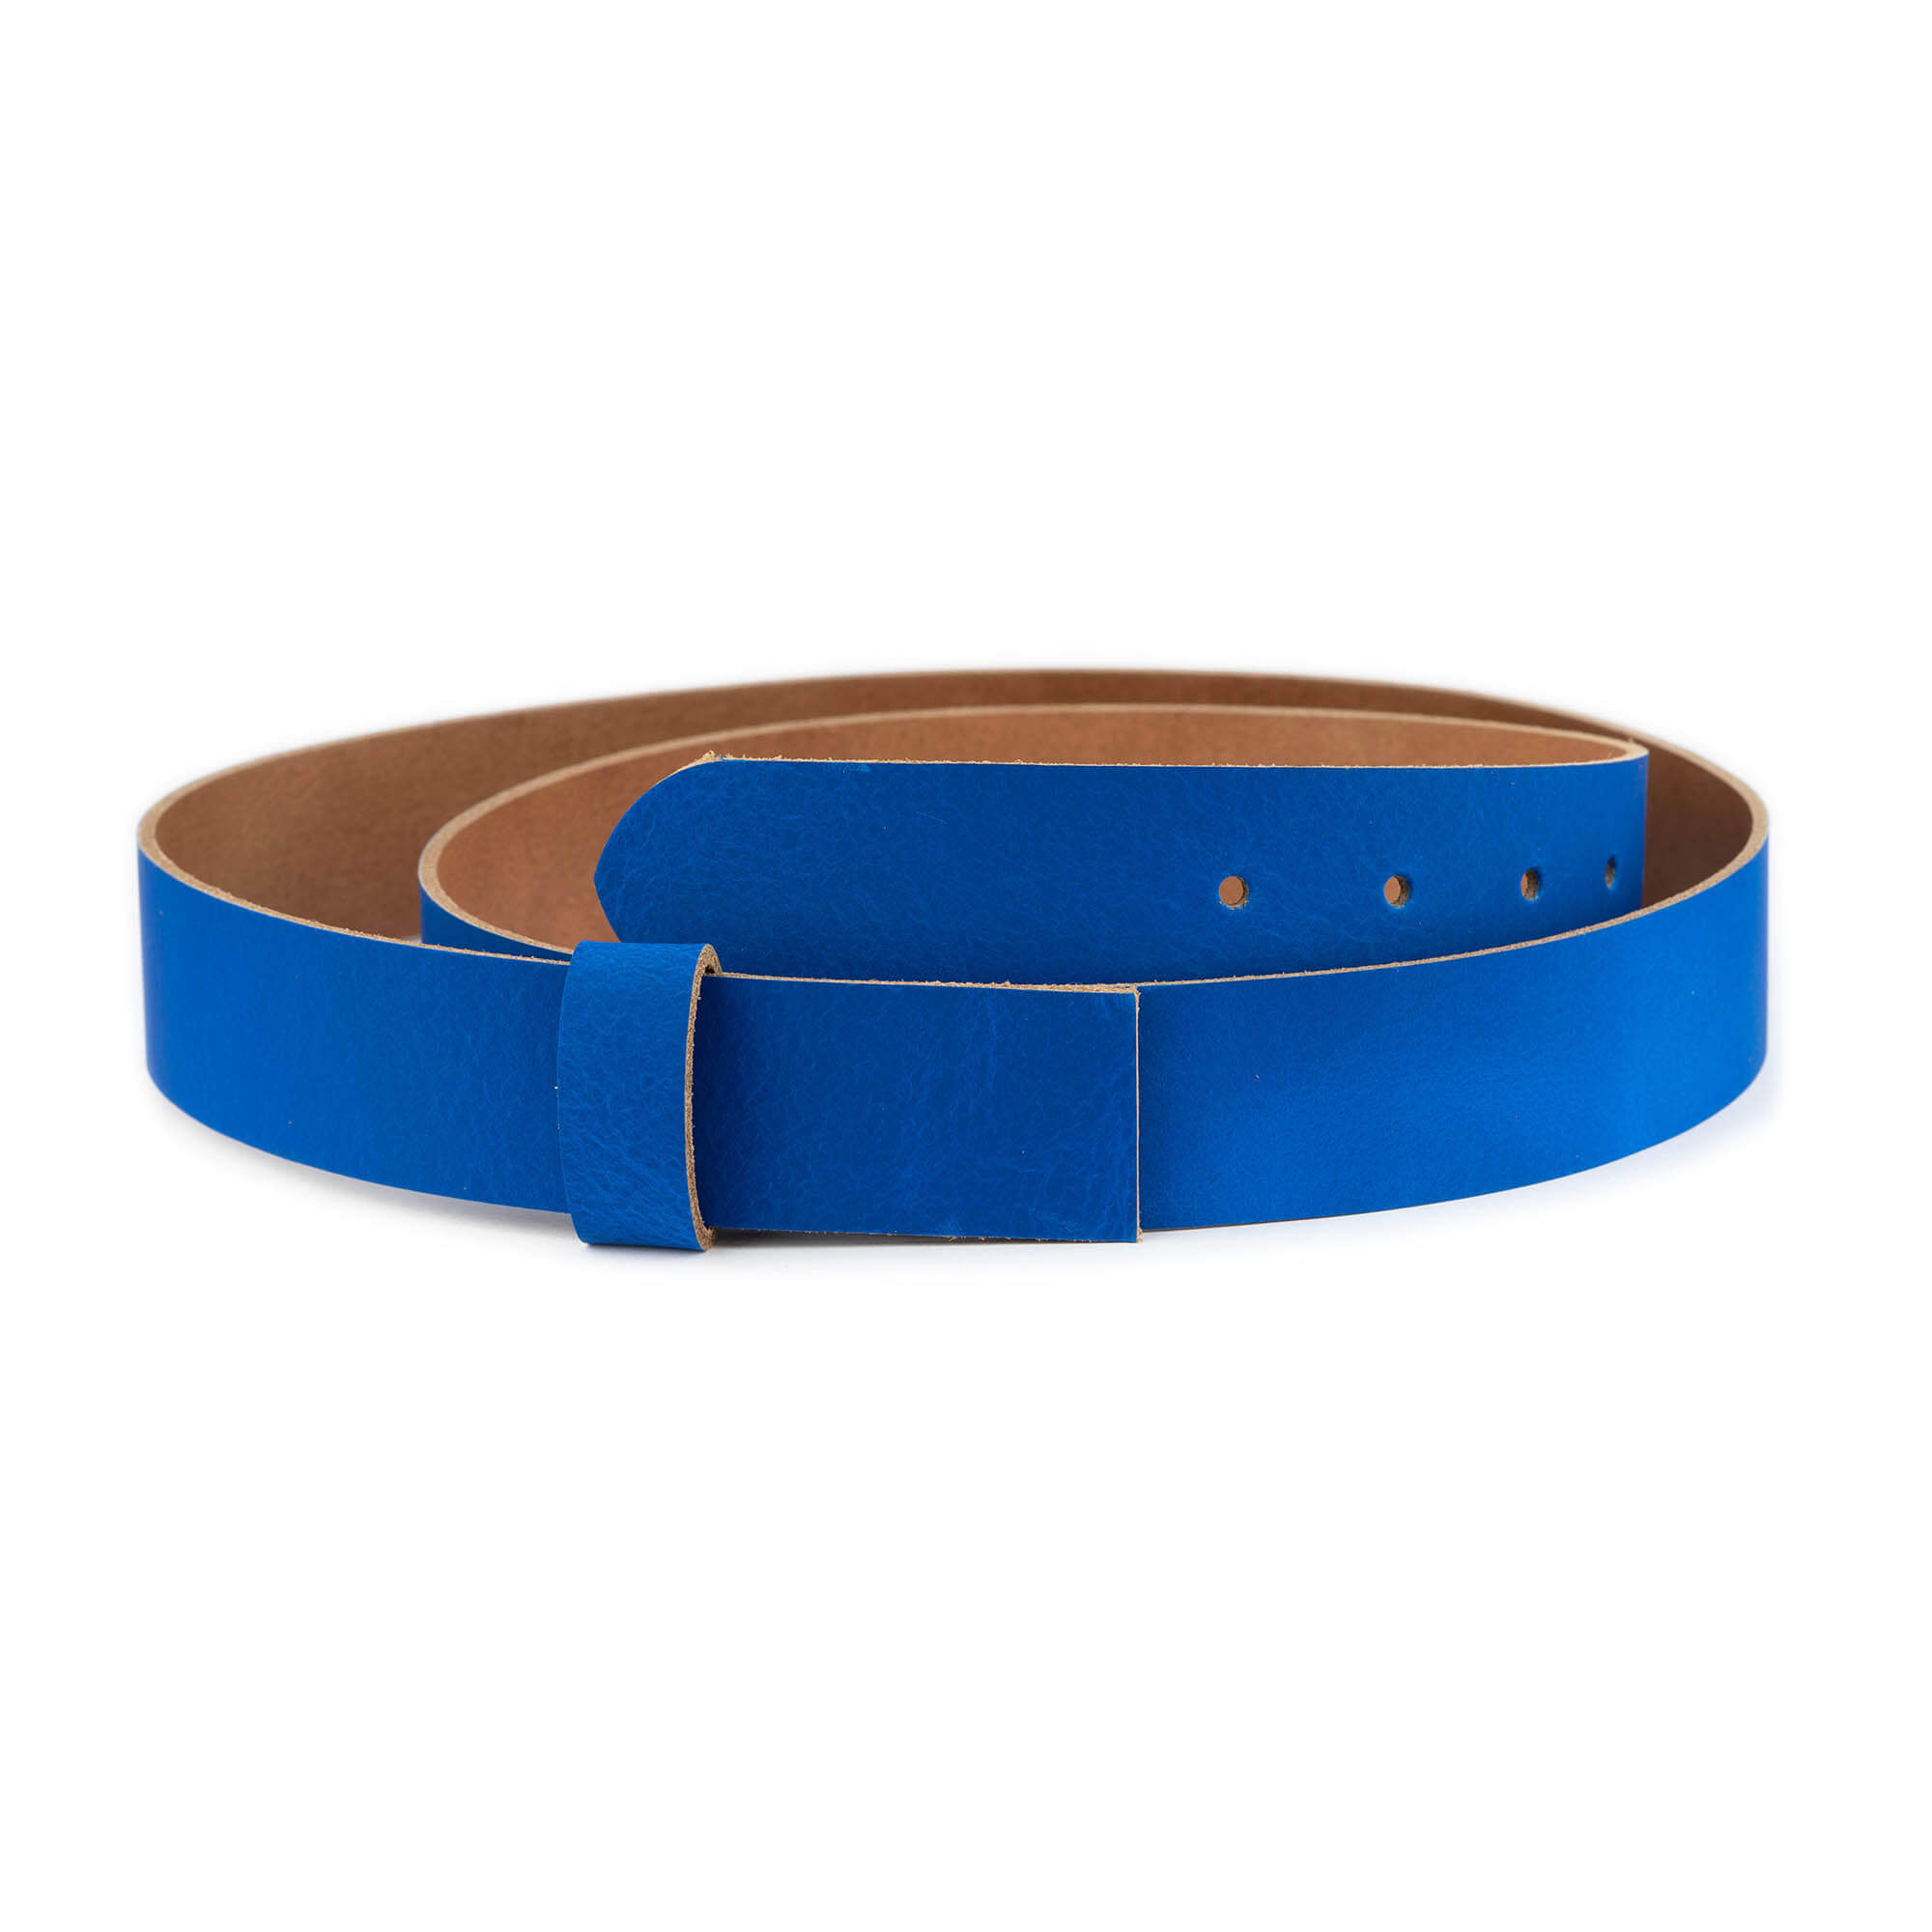 https://leatherbeltsonline.com/wp-content/uploads/2023/02/royal-blue-belt-strap-for-buckle-real-leather-35-mm-1.jpg